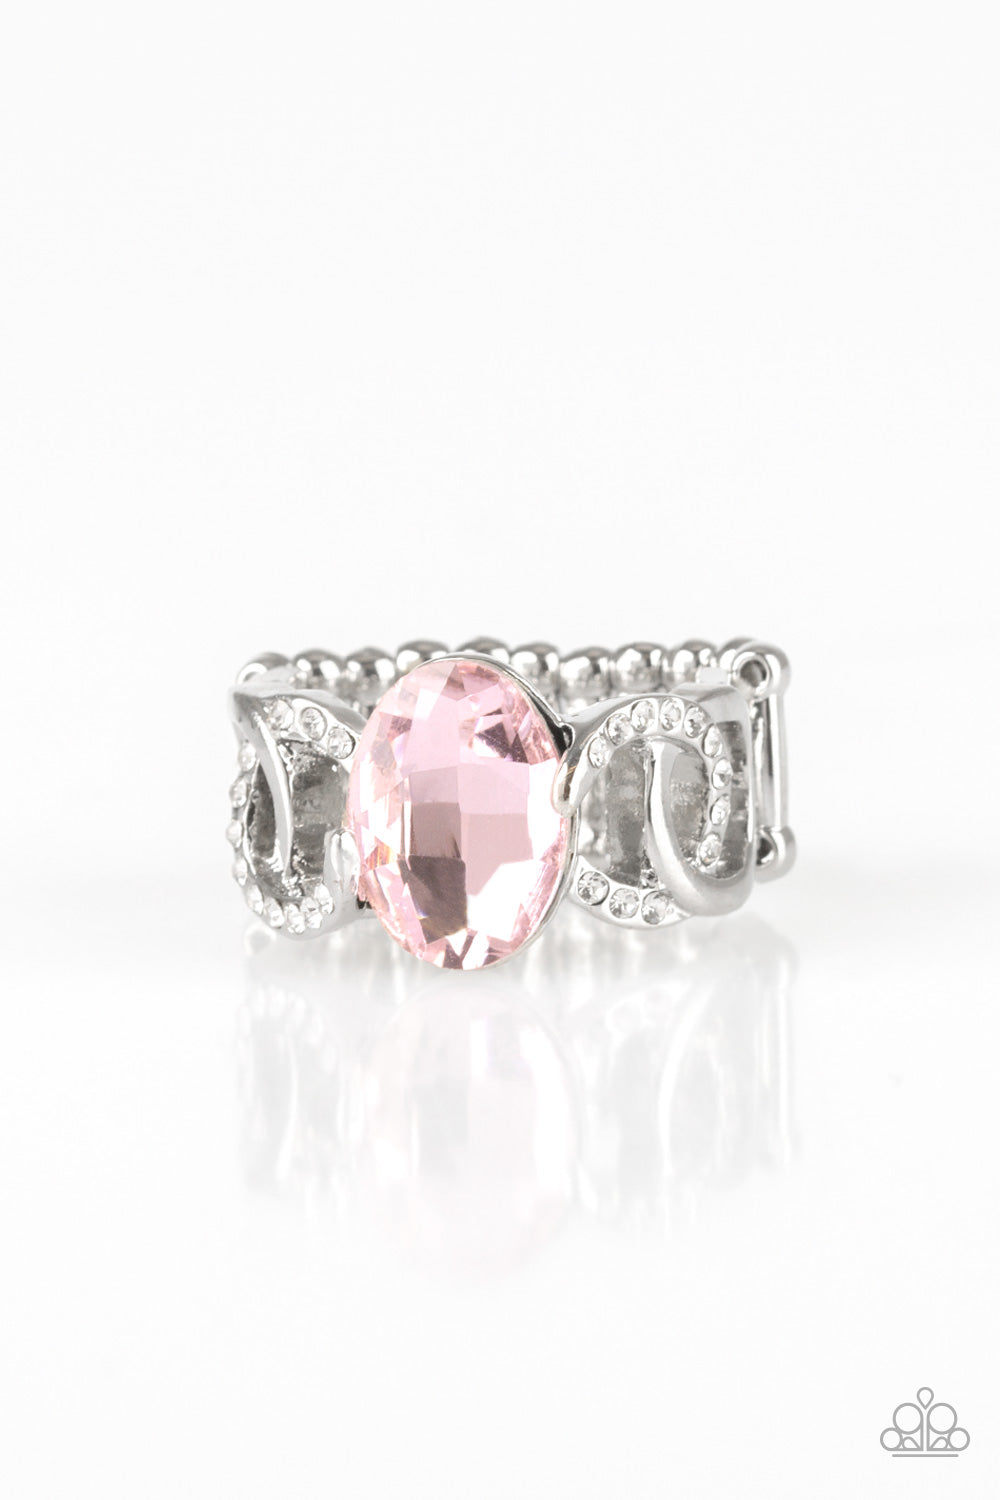 Supreme Bling - Pink ring